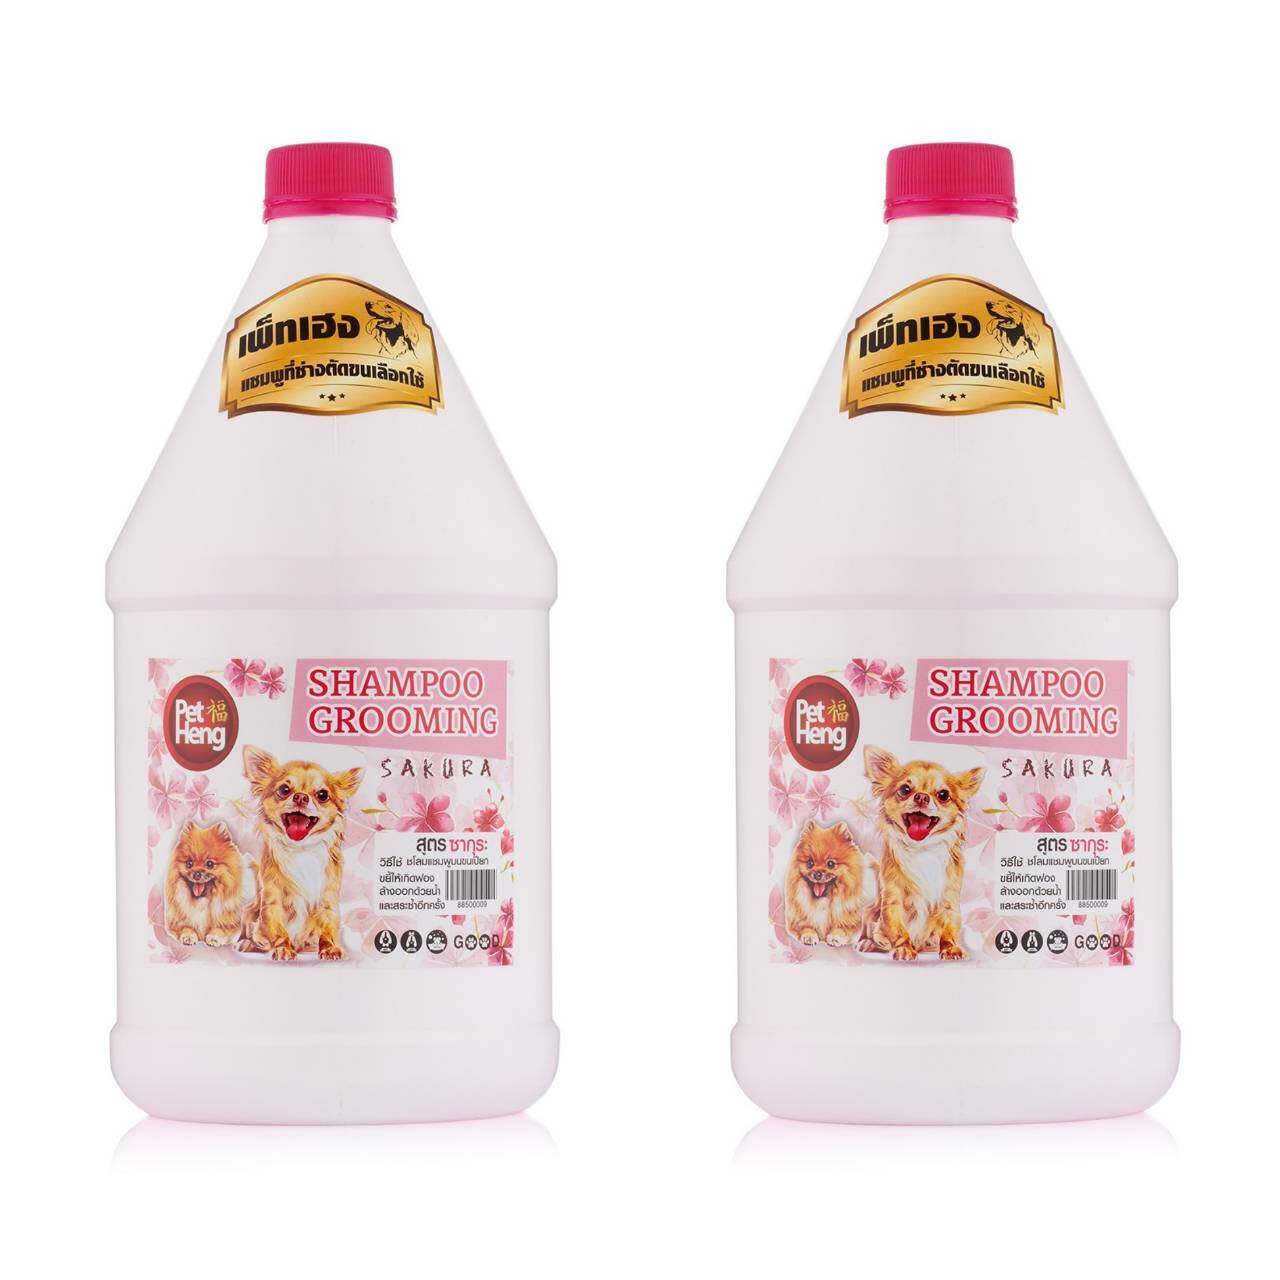 [2 ขวดx 3 ลิตร]Petheng Dog Shampoo แชมพูสุนัข  แมว ป้องกัน เห็บหมัด สำหรับทุกสายพันธุ์ บำรุงขน แก้คัน สูตรขนนุ่ม หอมนาน